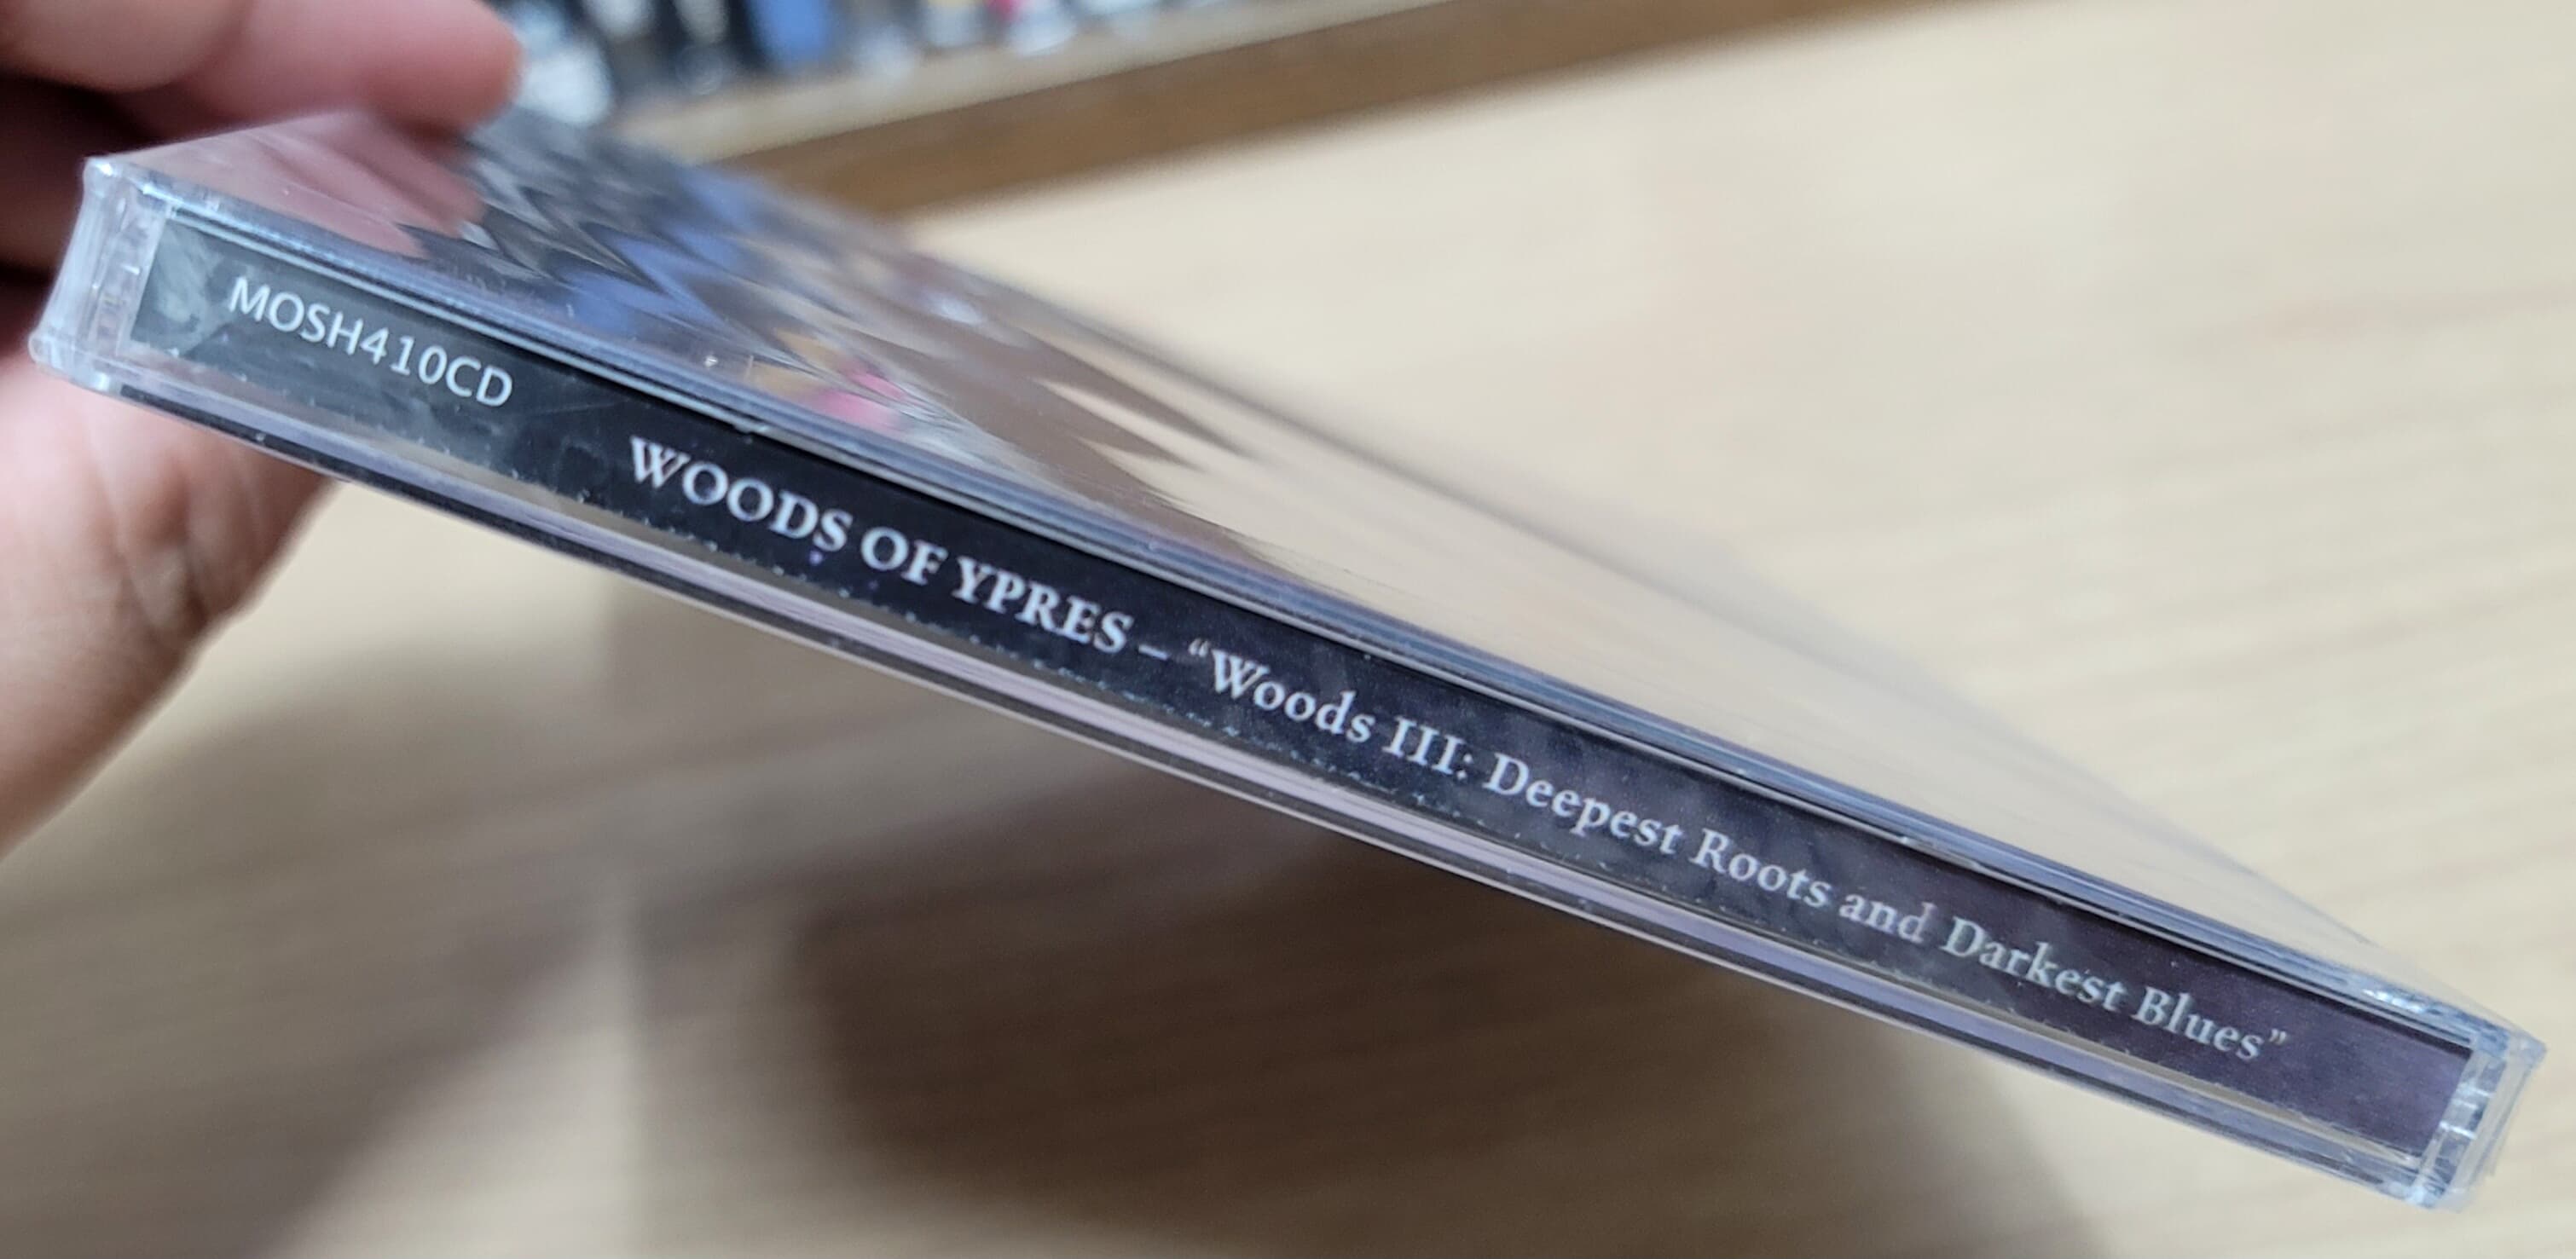 (미개봉 수입반) Woods Of Ypres - "Woods III: The Deepest Roots and Darkest Blues"